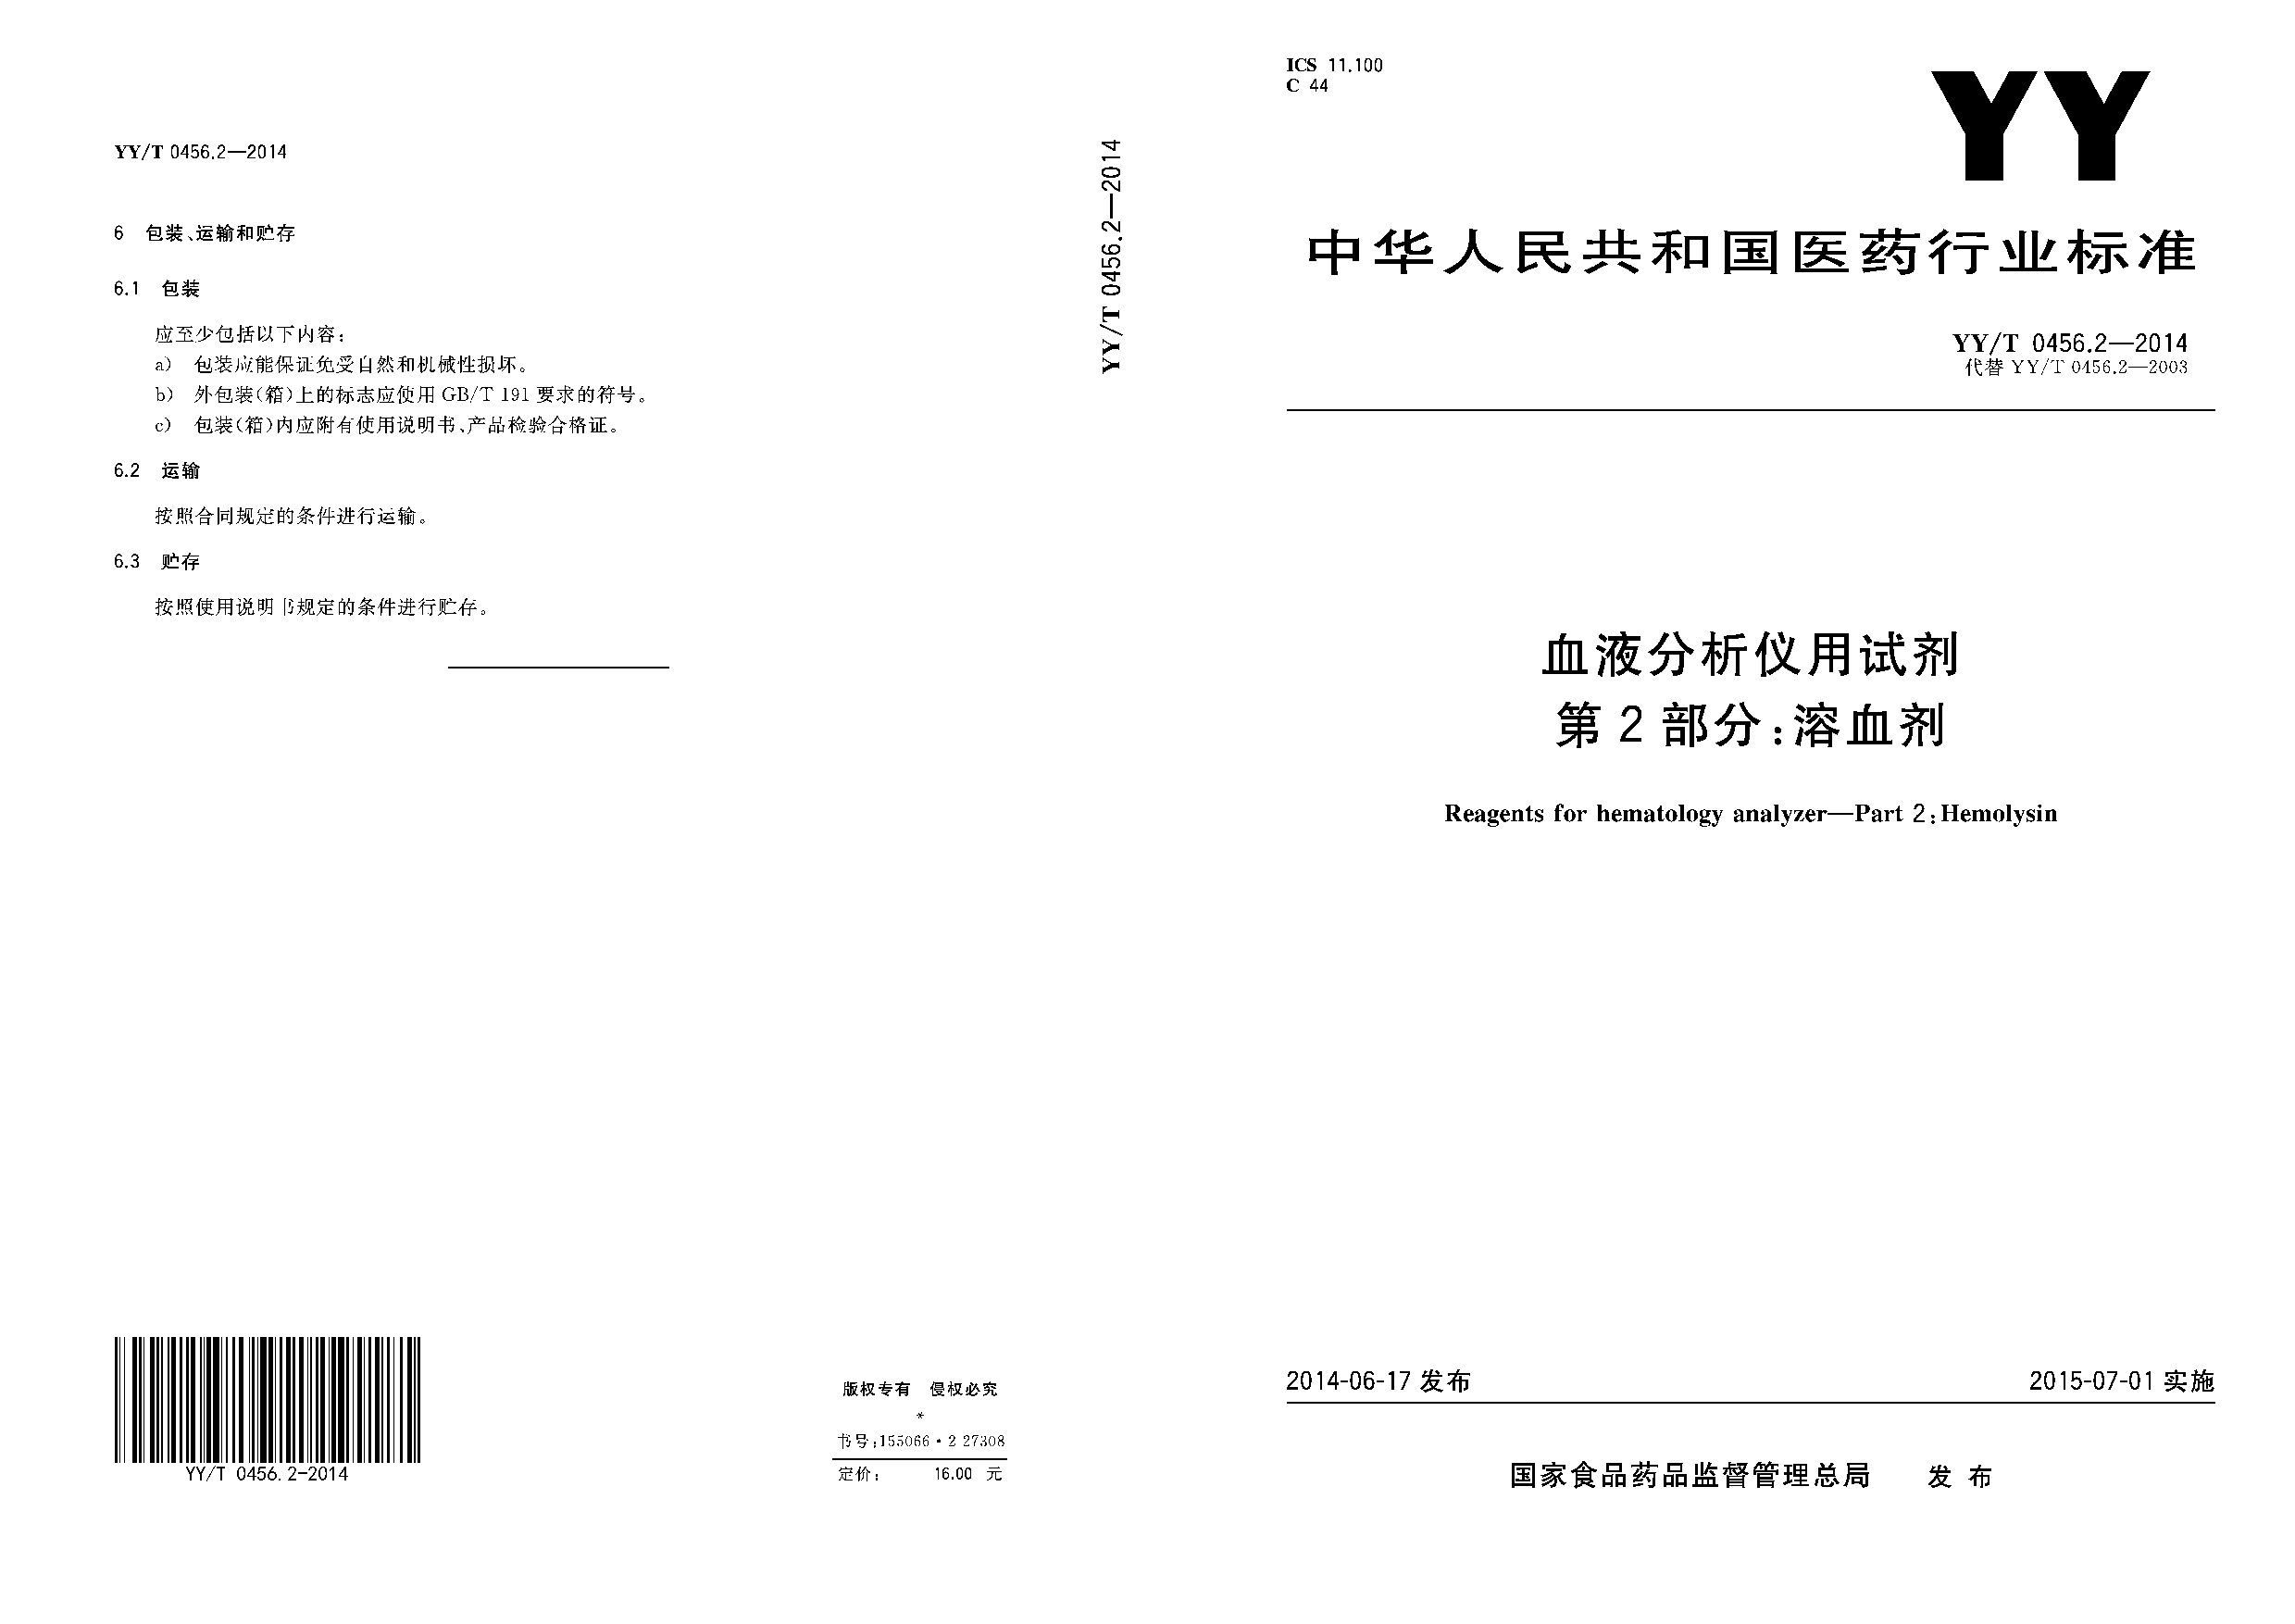 YY/T 0456.2-2014封面图